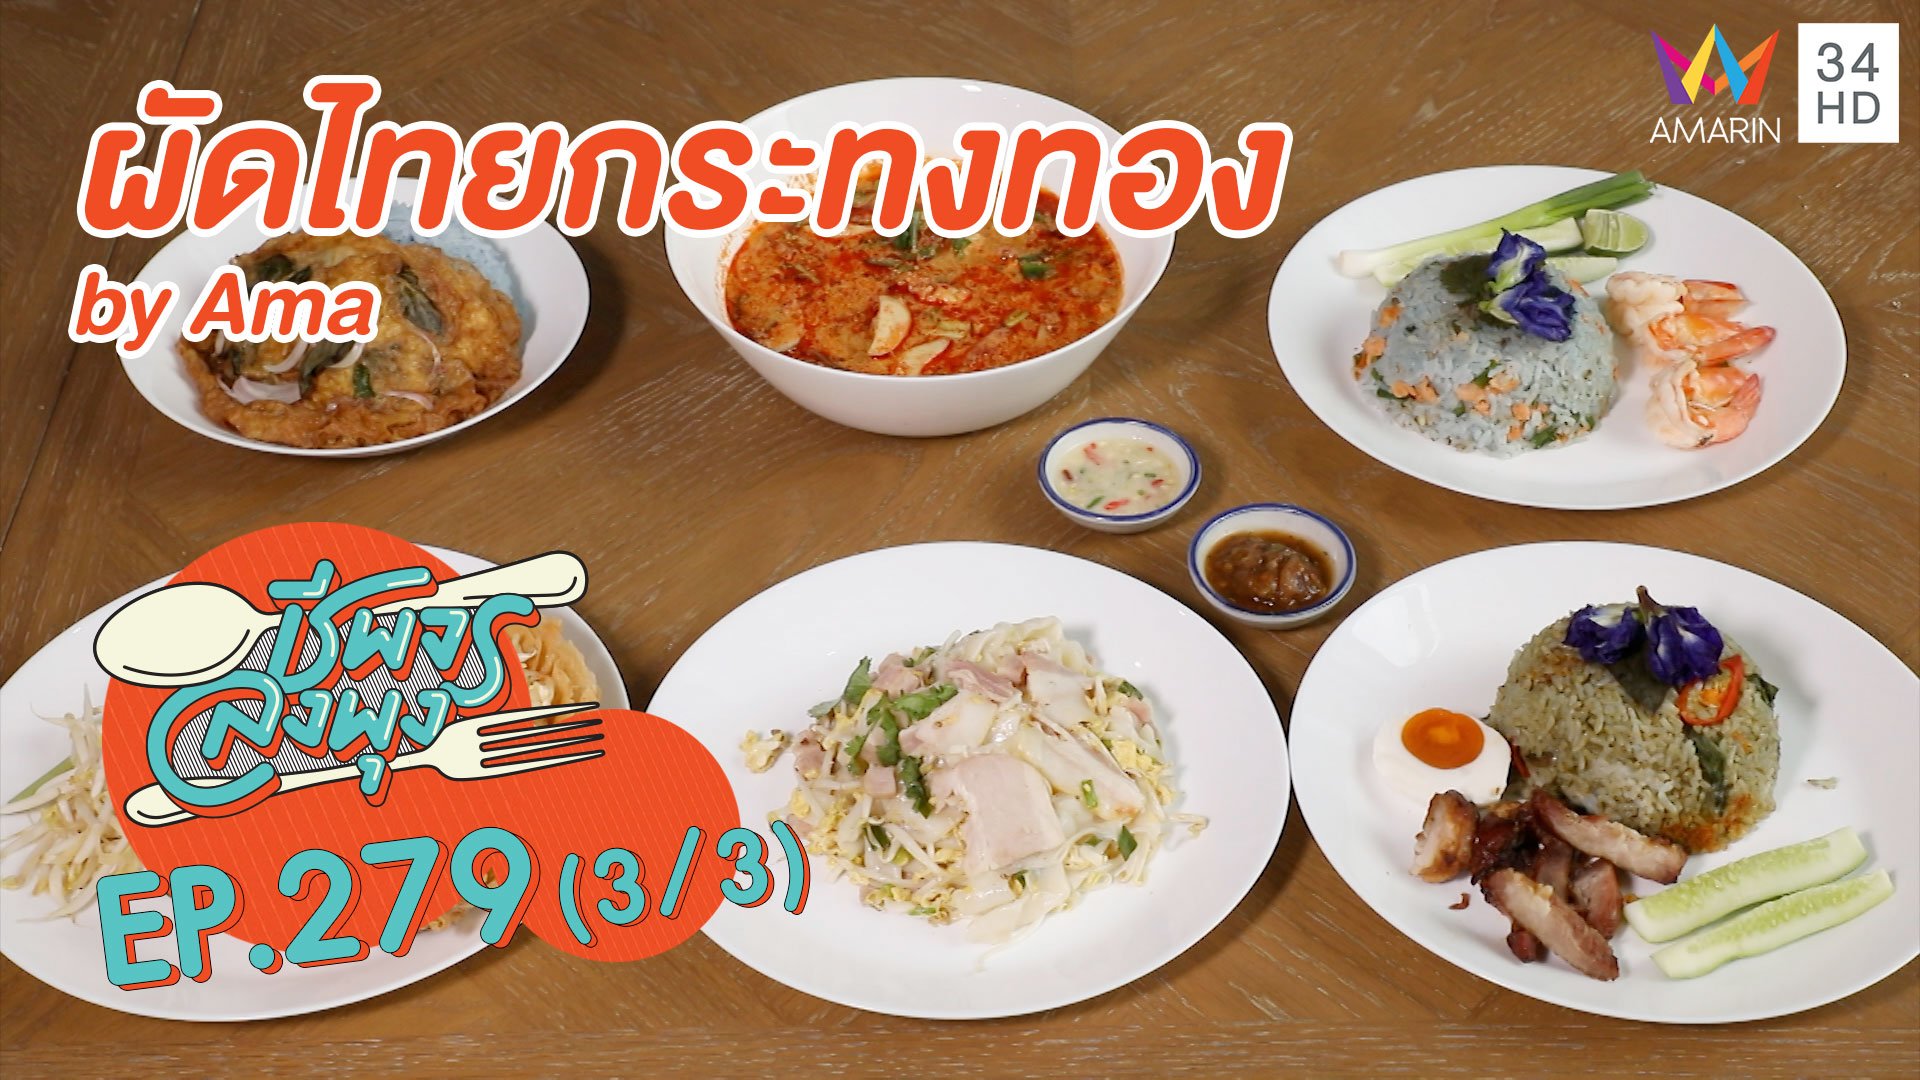 ทีเด็ดอาหารไทย 'ผัดไทยกระทงทอง by Ama' | ชีพจรลงพุง | 21 ก.พ. 64 (3/3) | AMARIN TVHD34